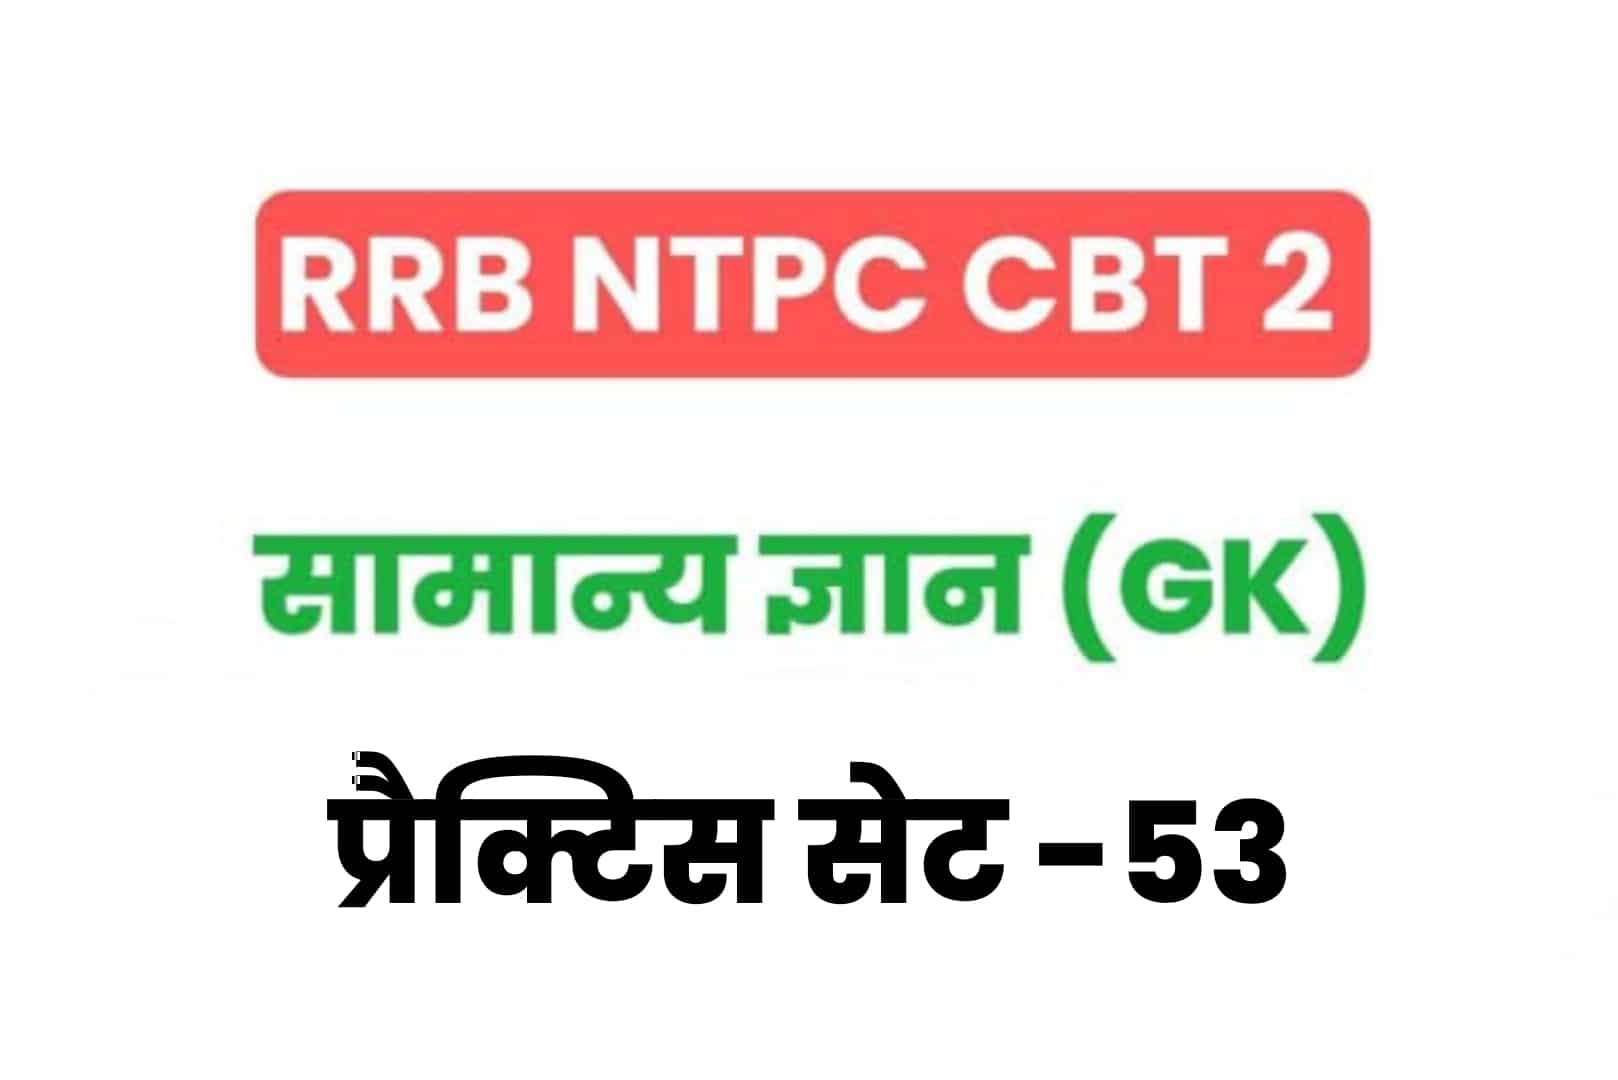 RRB NTPC CBT 2 GK प्रैक्टिस सेट 53: परीक्षा में शामिल होनें से पूर्व अवश्य पढ़ें सामान्य ज्ञान के 25 मुख्य MCQ